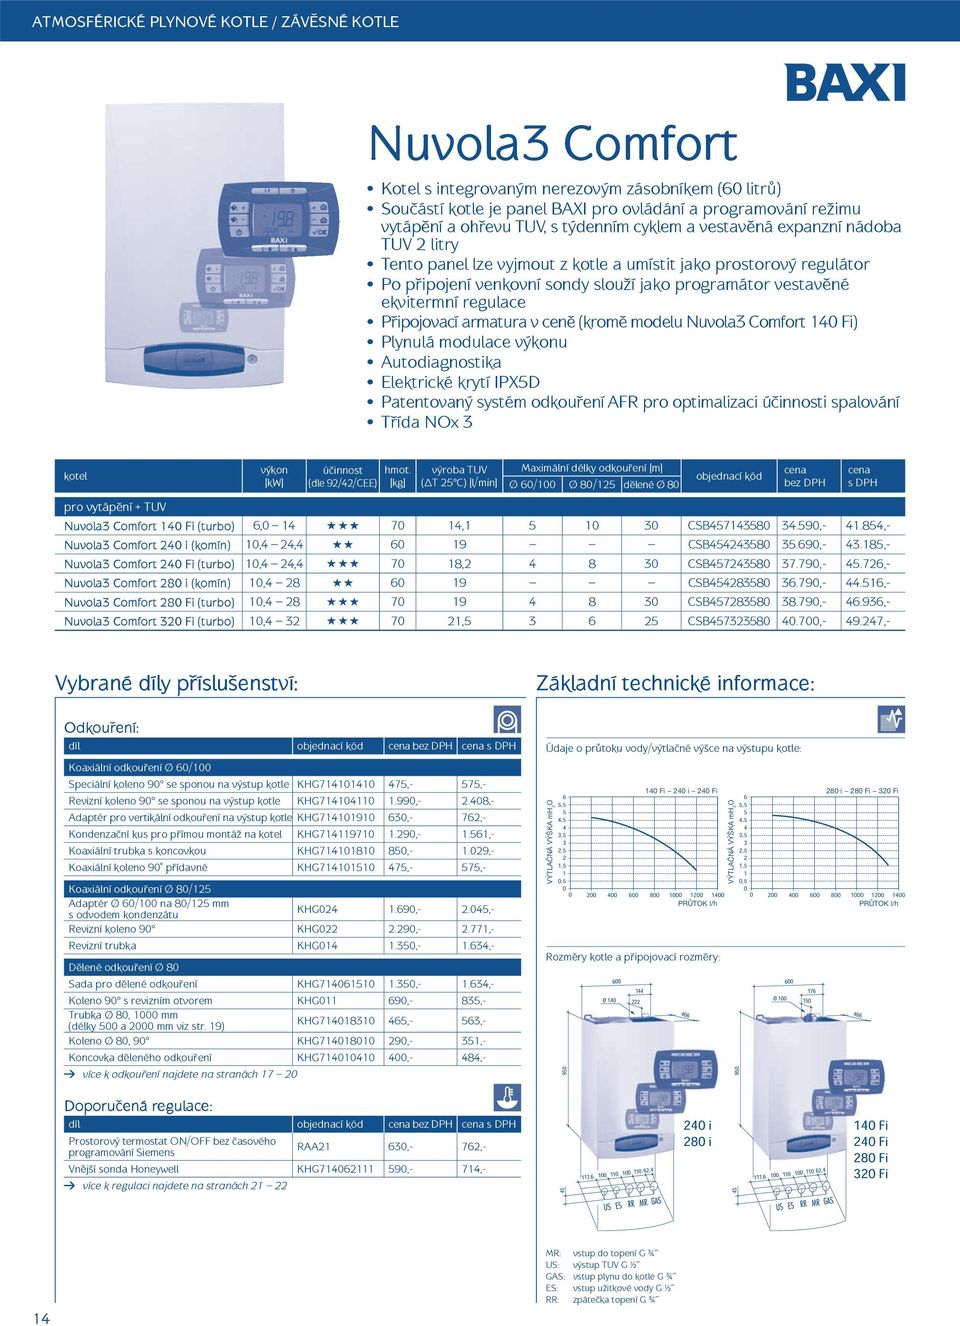 regulace P ipojovací armatura v cen (krom modelu Nuvola3 Comfort 14 Fi) Plynulá modulace u Autodiagnostika Elektrické krytí IPX5D Patentovaný systém odkou ení AFR pro optimalizaci ú innosti spalování